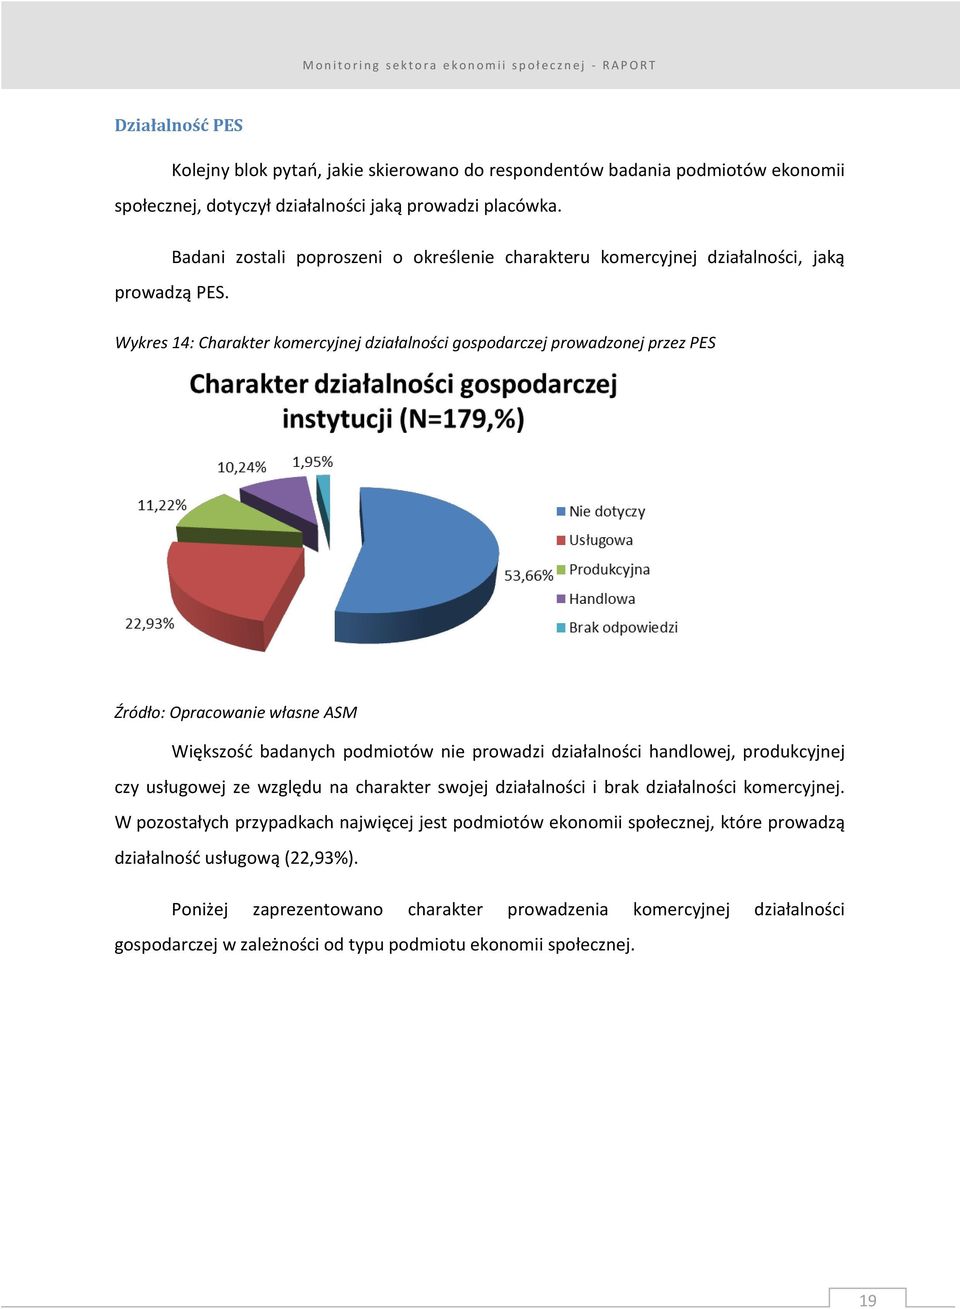 Wykres 14: Charakter komercyjnej działalności gospodarczej prowadzonej przez PES Większość badanych podmiotów nie prowadzi działalności handlowej, produkcyjnej czy usługowej ze względu na